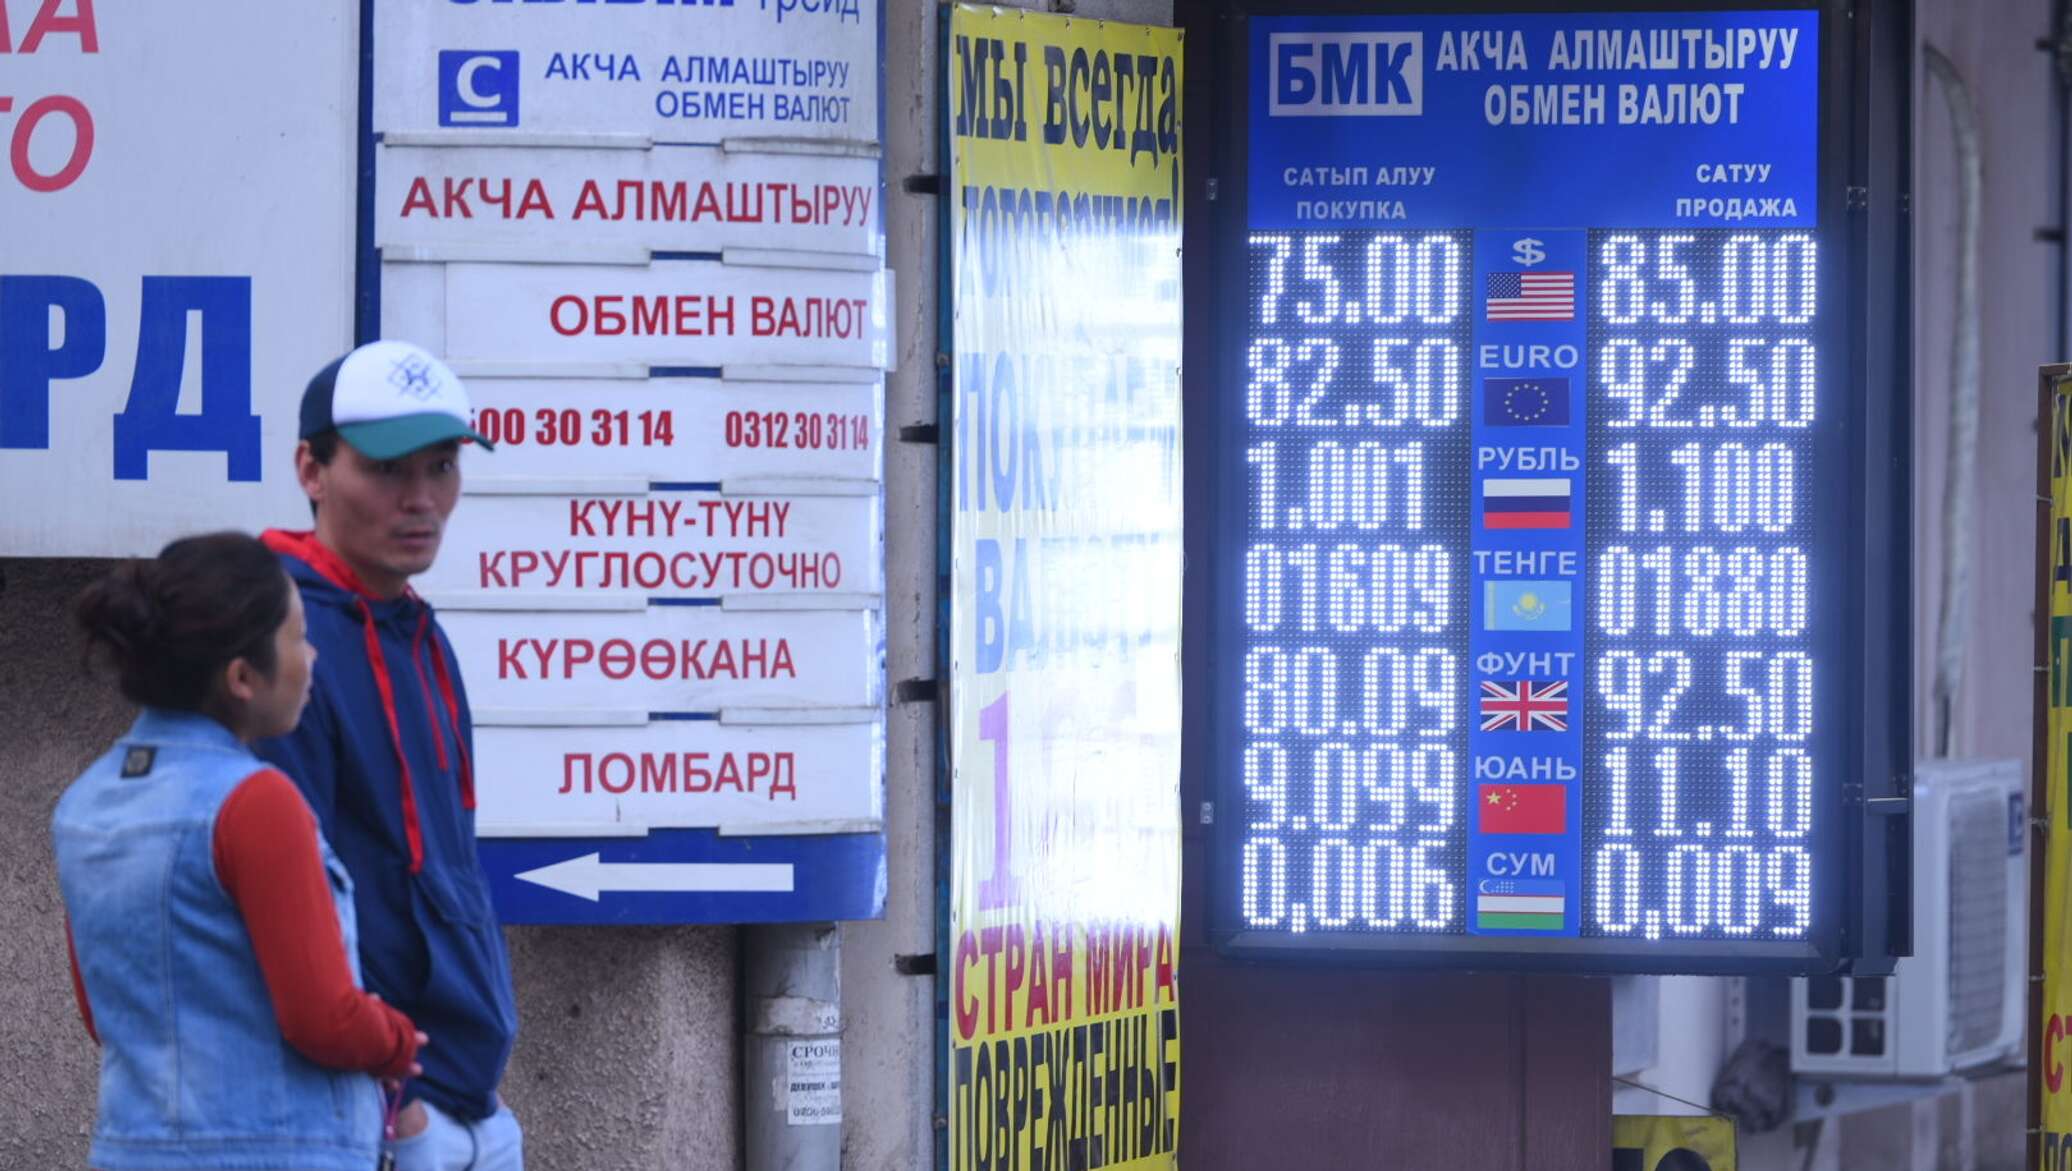 Рубль на сом бишкек сегодня в кыргызстане. Курсы валют в Кыргызстане. Курсы валют в Киргизии. Курсы валют киргизский сом. Курсы валют сом Киргизия.